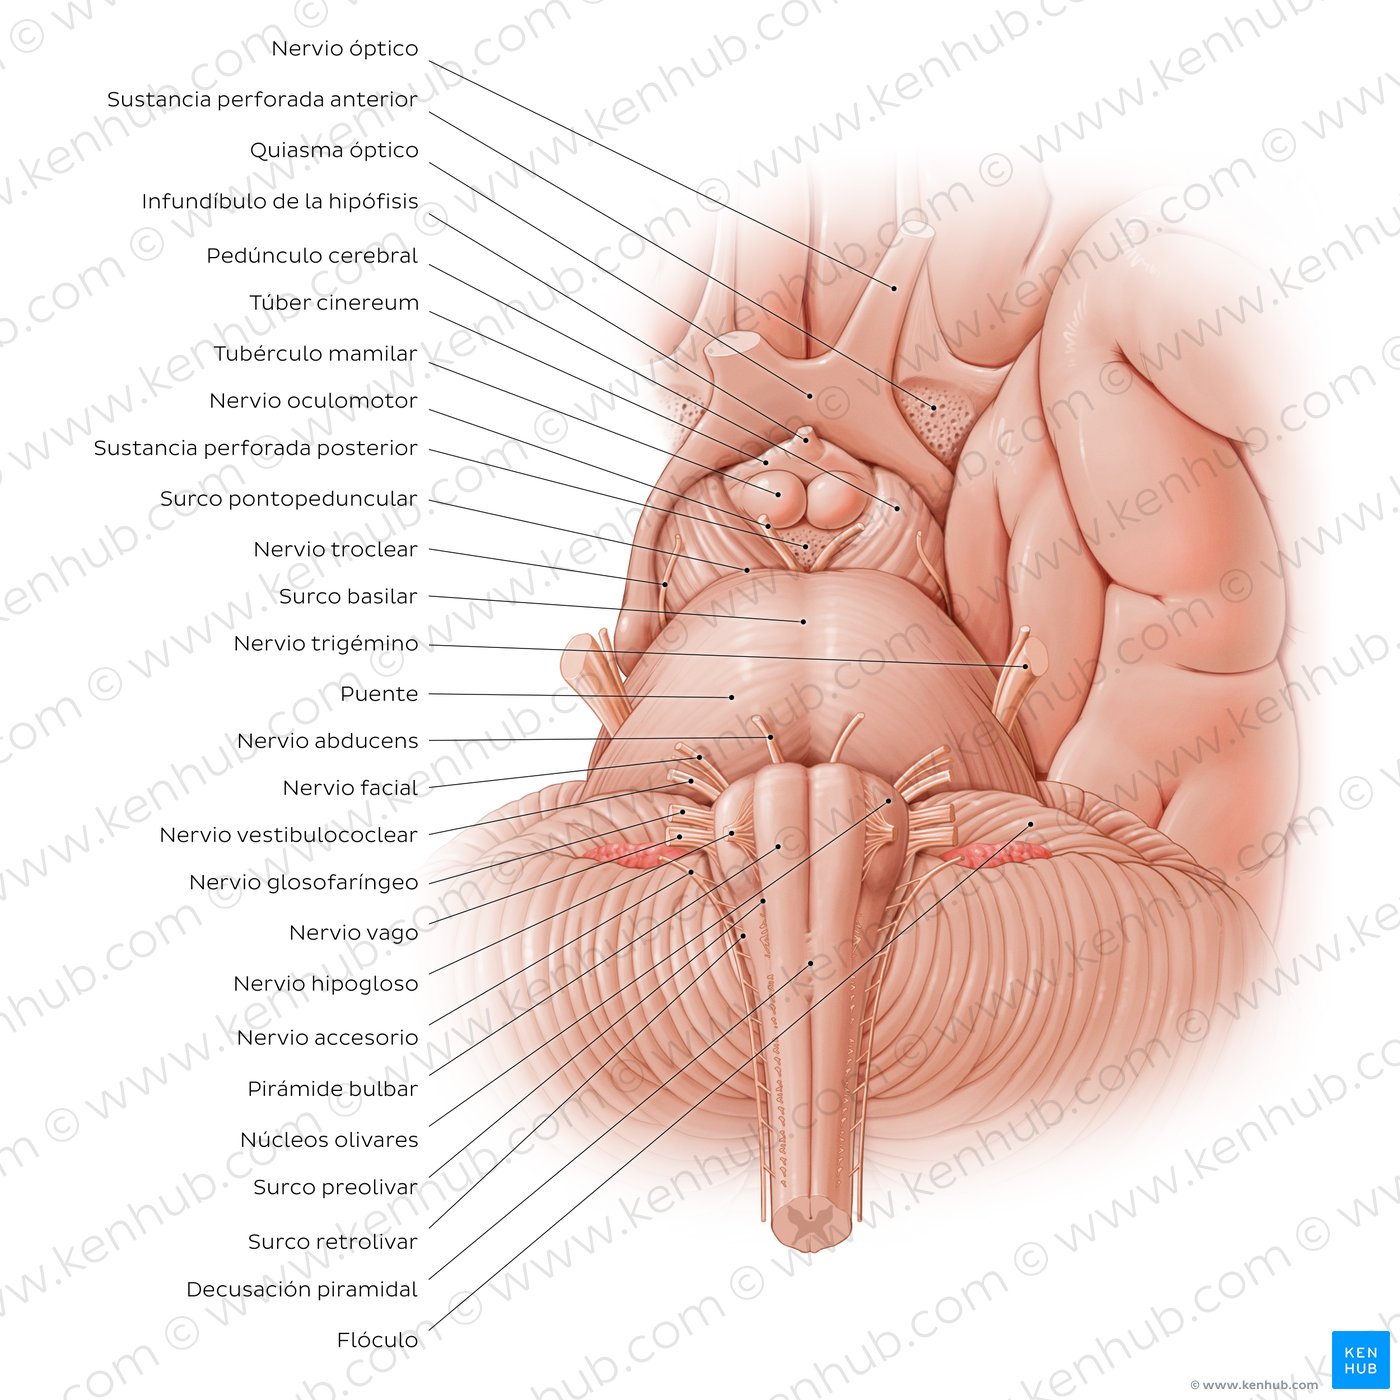 Vista anterior del tronco encefálico